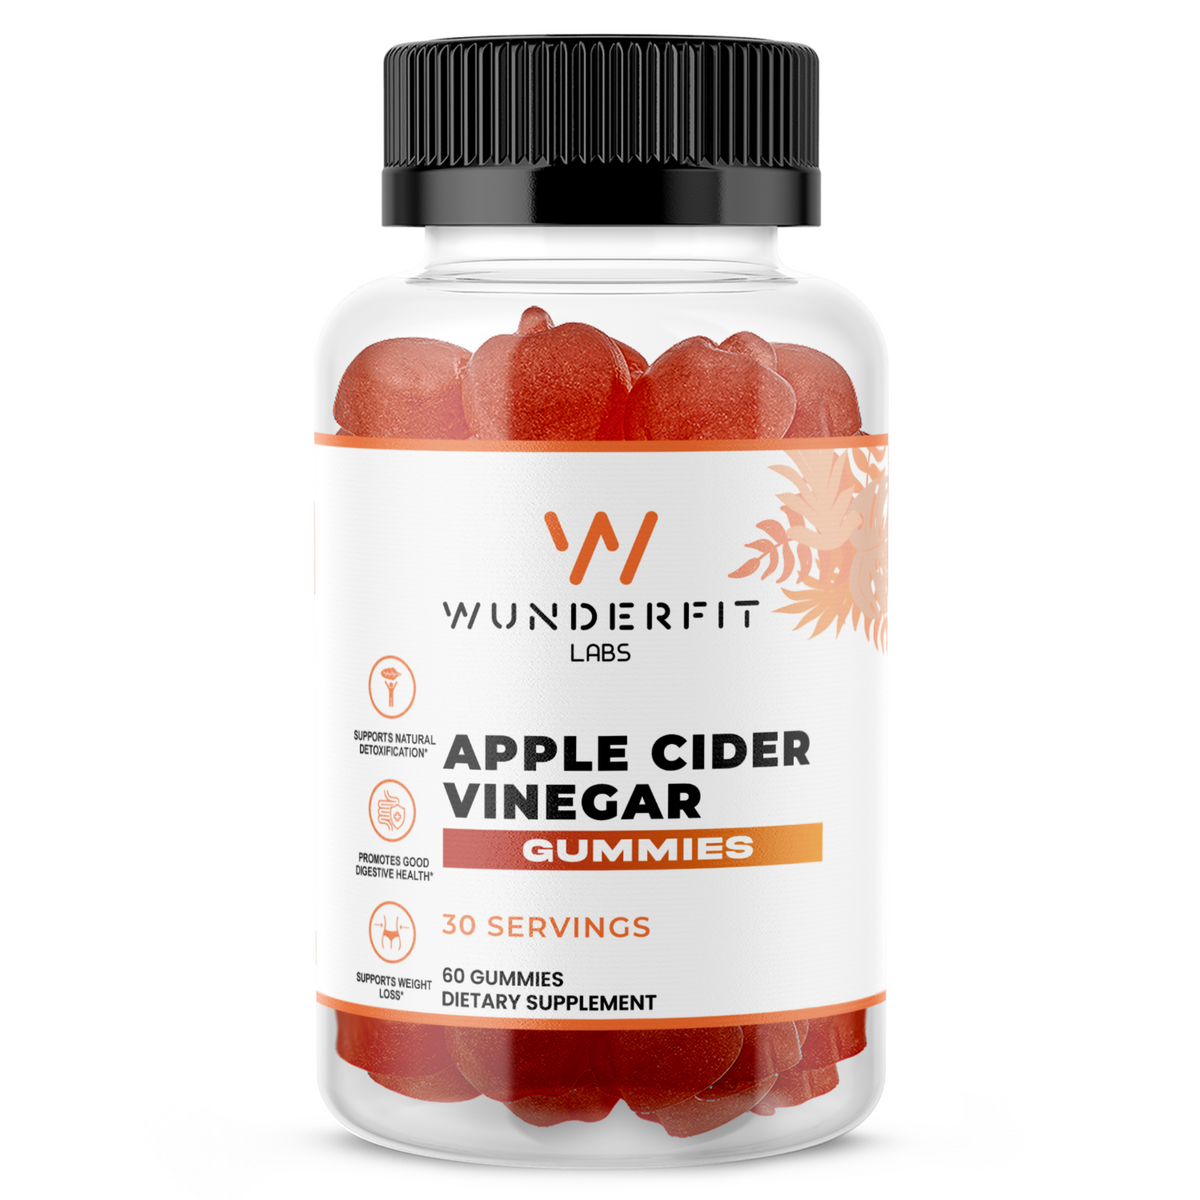 Apple Cider Vinegar, Gummies, 30 Servings